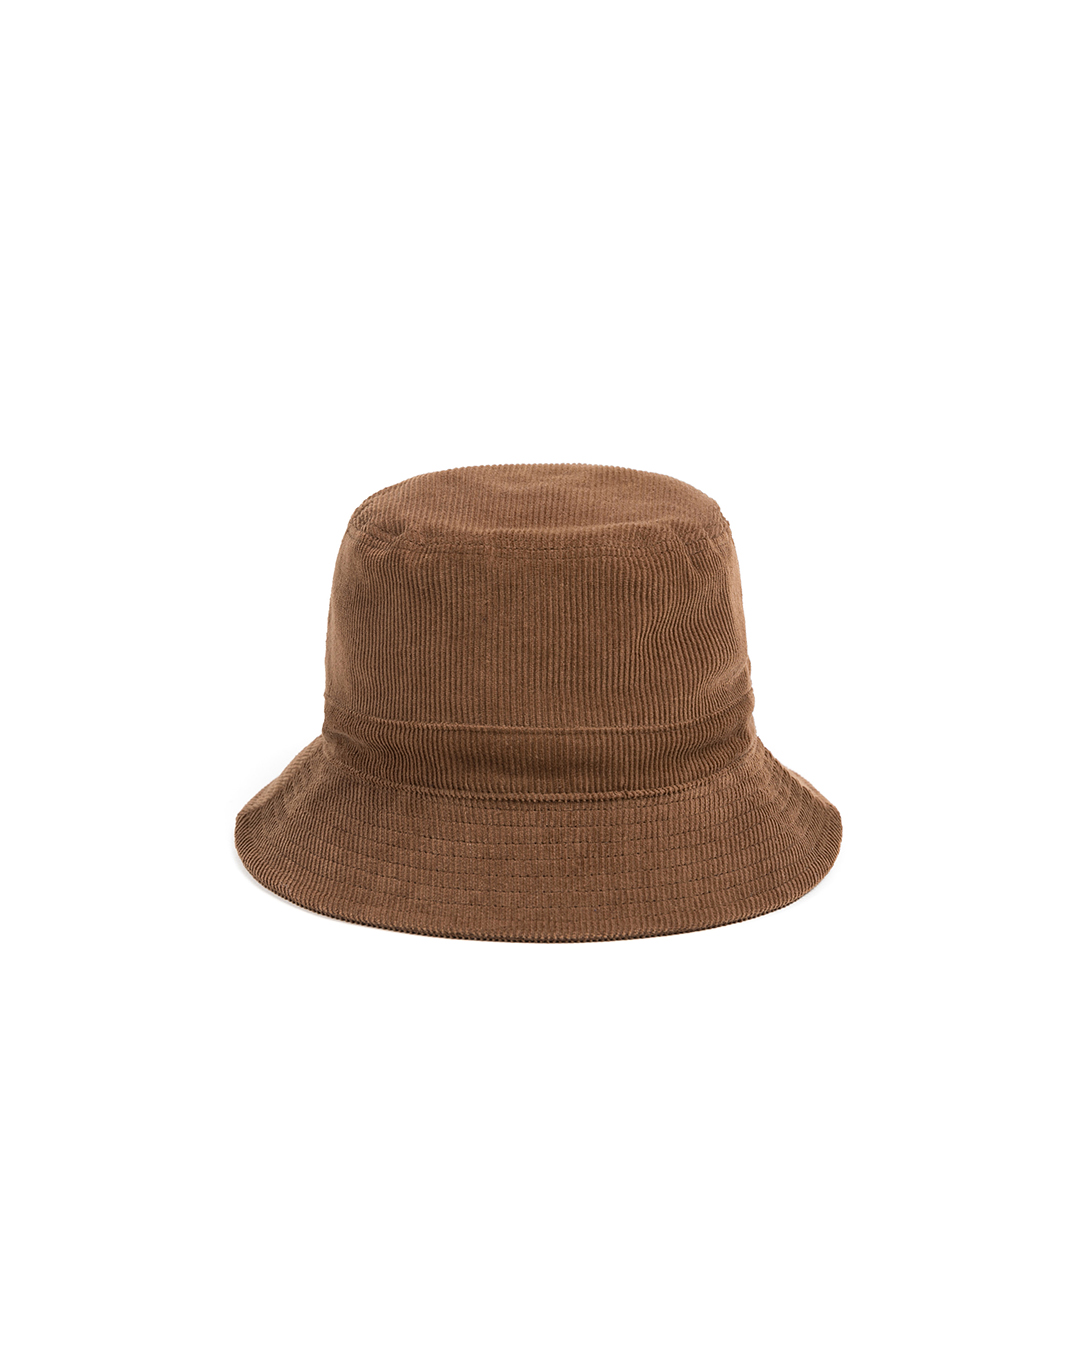 PL CORDUROY BUCKET HAT (beige)